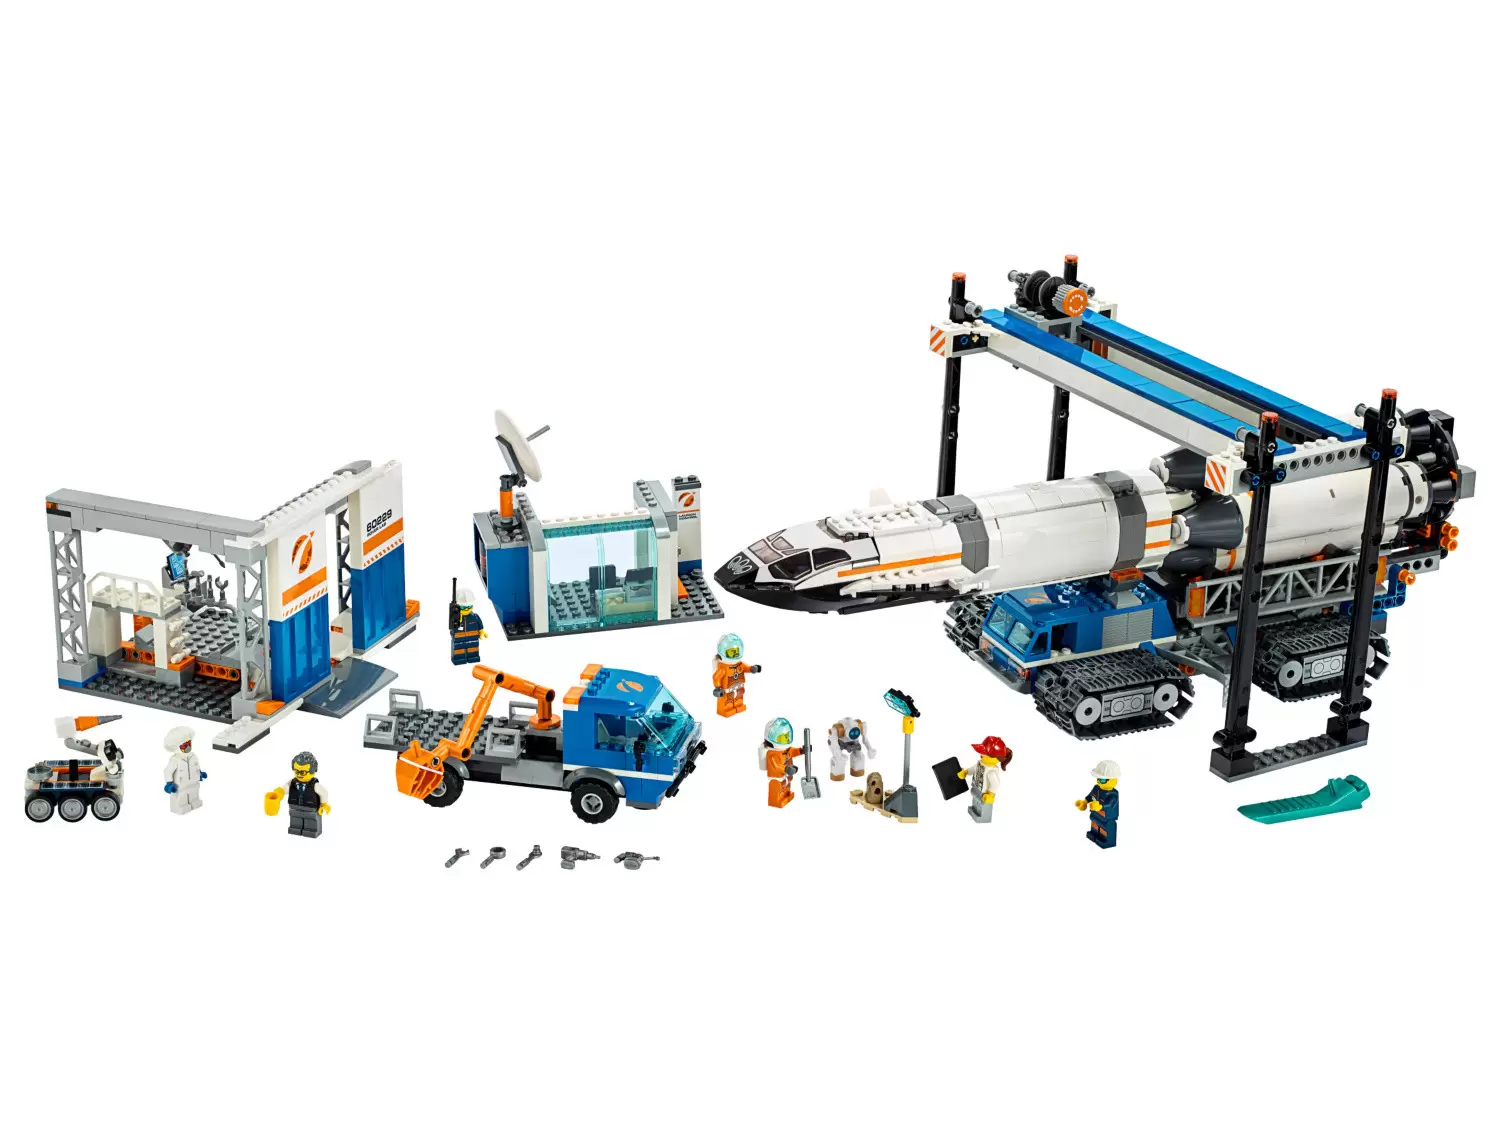 LEGO CITY - Rocket Assembly & Transport